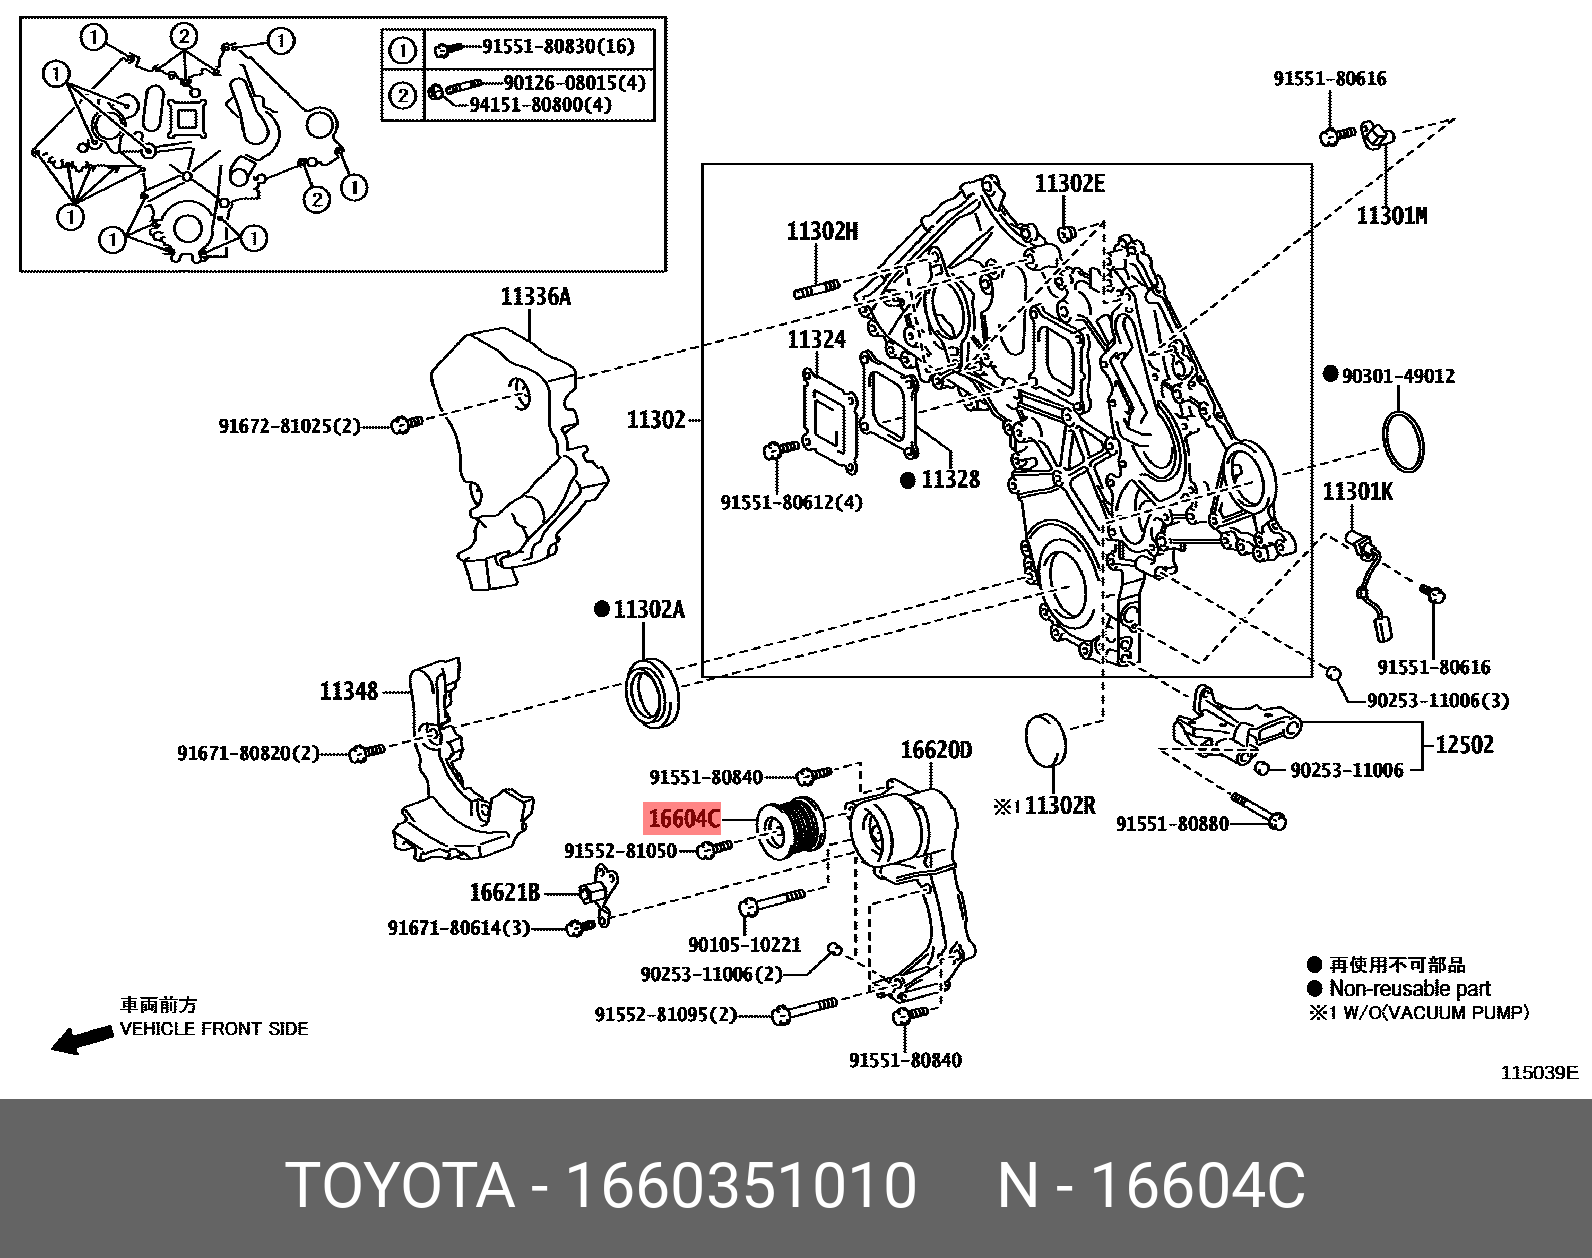 Ролик обводной приводного ремня - Toyota 16603-51010